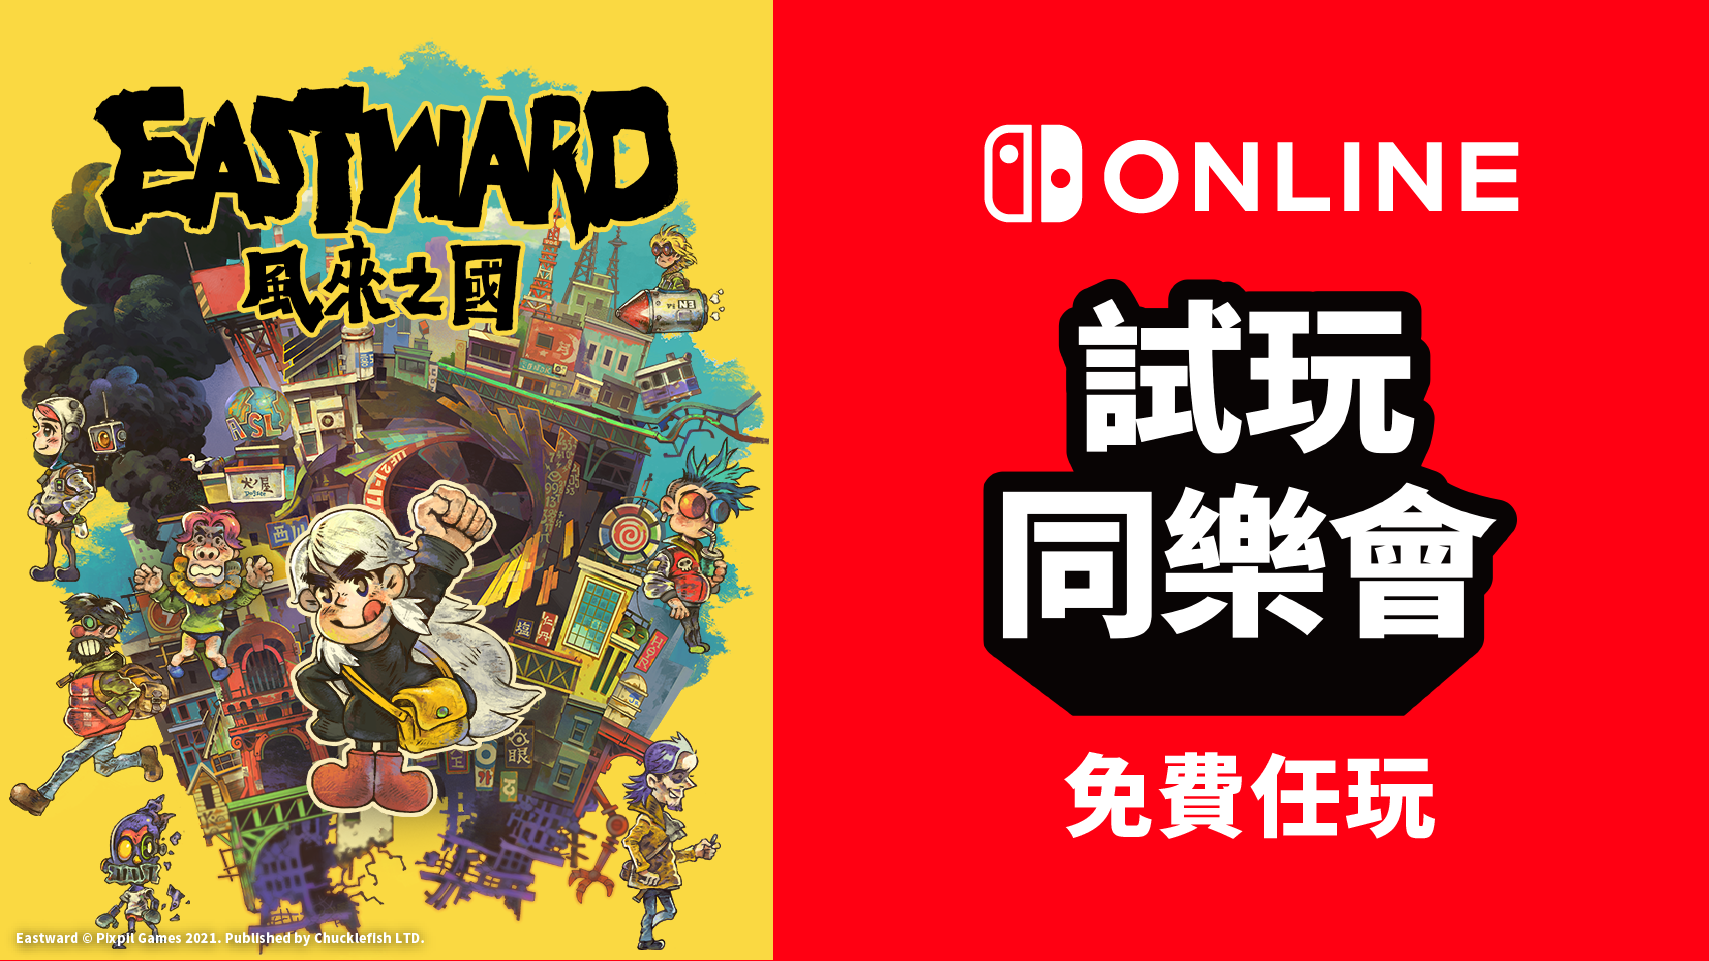 免費遊玩《風來之國(Eastward)》！Nintendo Switch Online加入者 